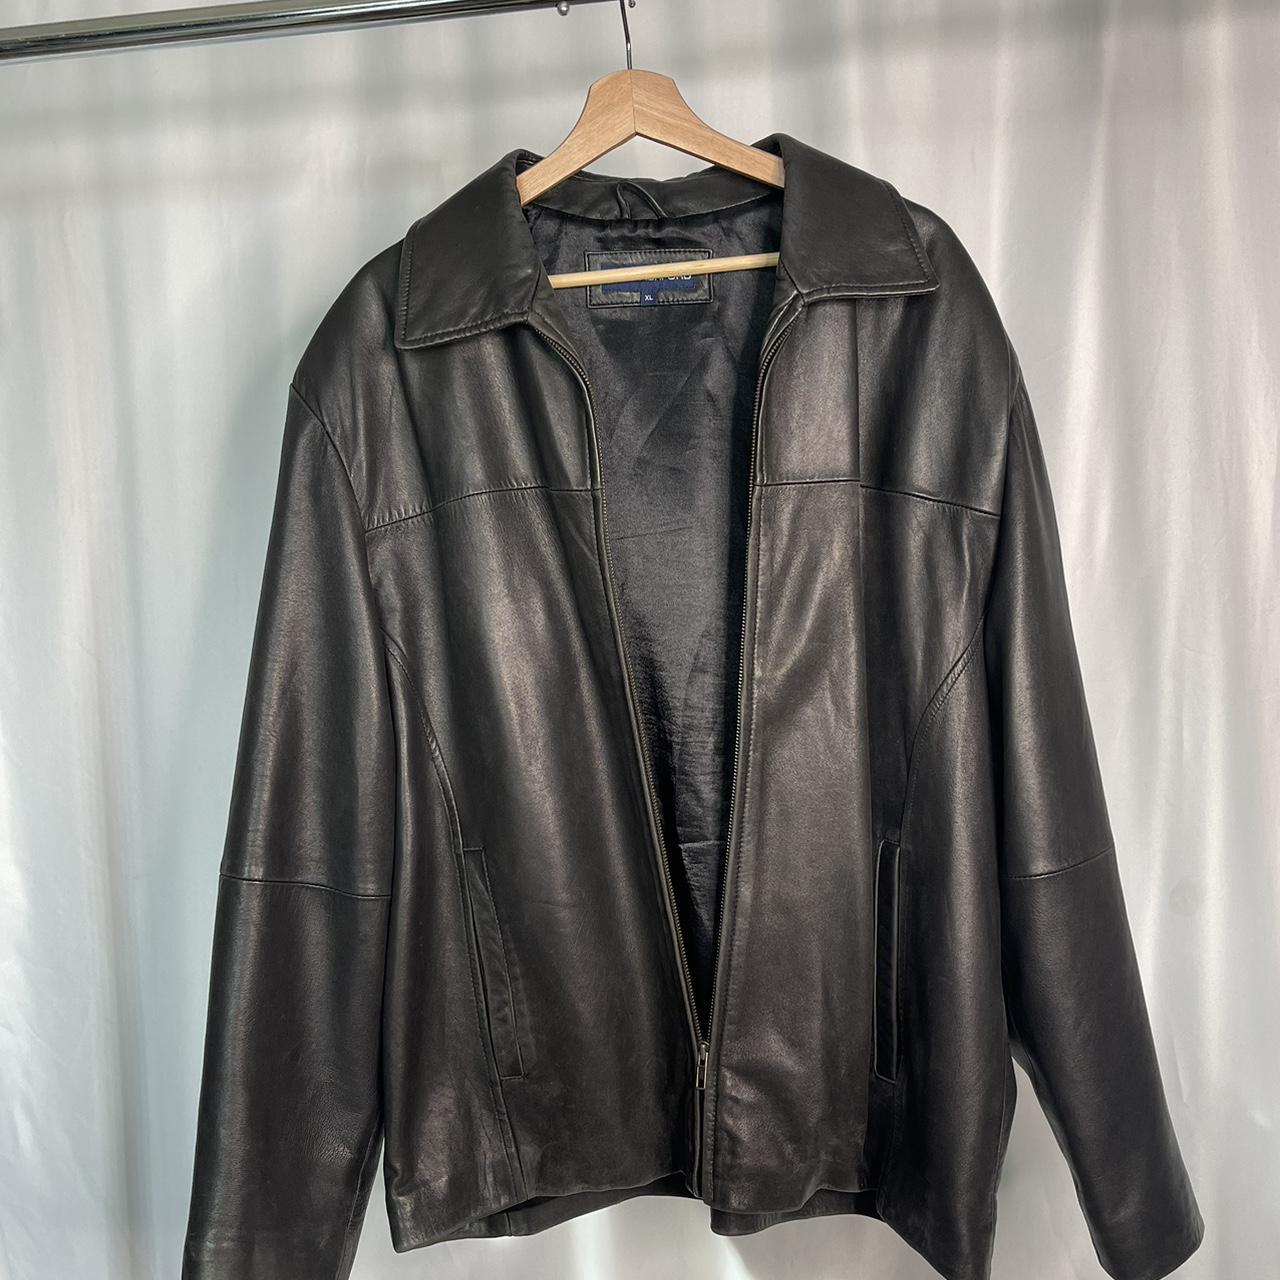 Vintage Women's Bomber Jacket - Black - XL